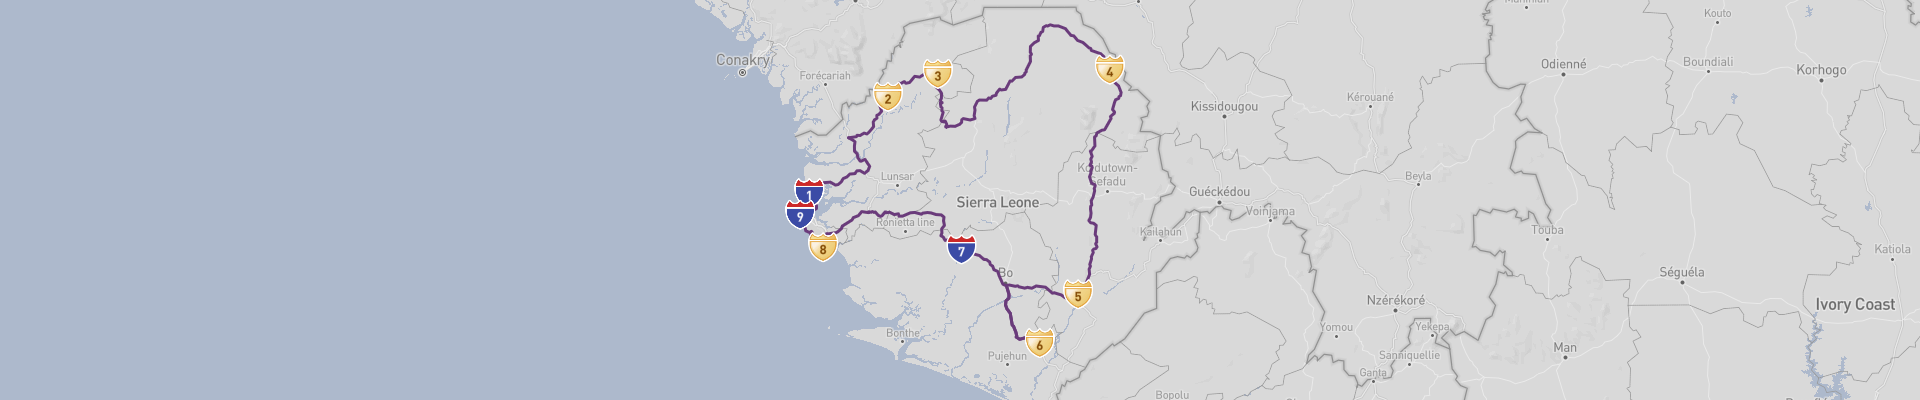 Сьерра-Леоне на автомобиле